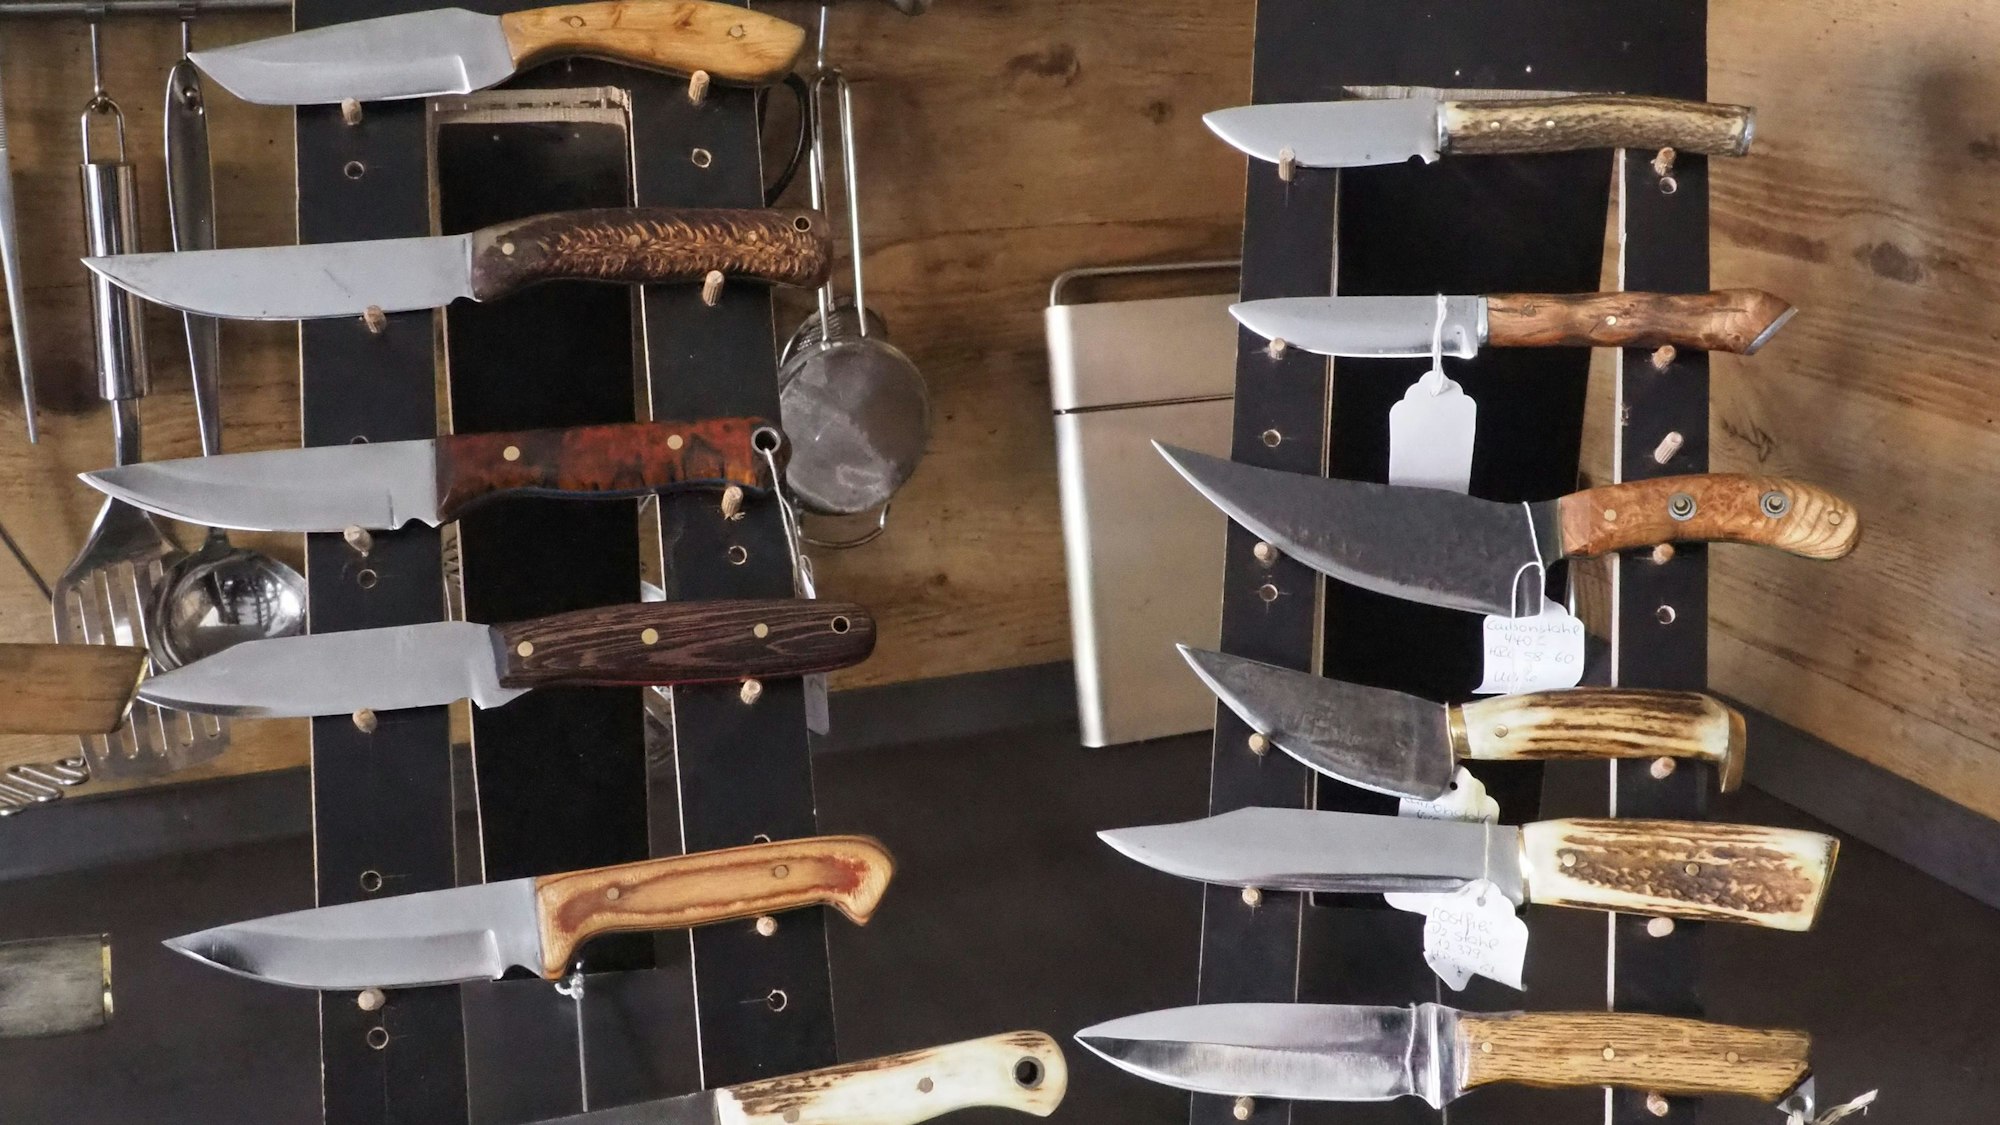 Das Bild zeigt zahlreiche Messer in der Küche der Klinkhammers.